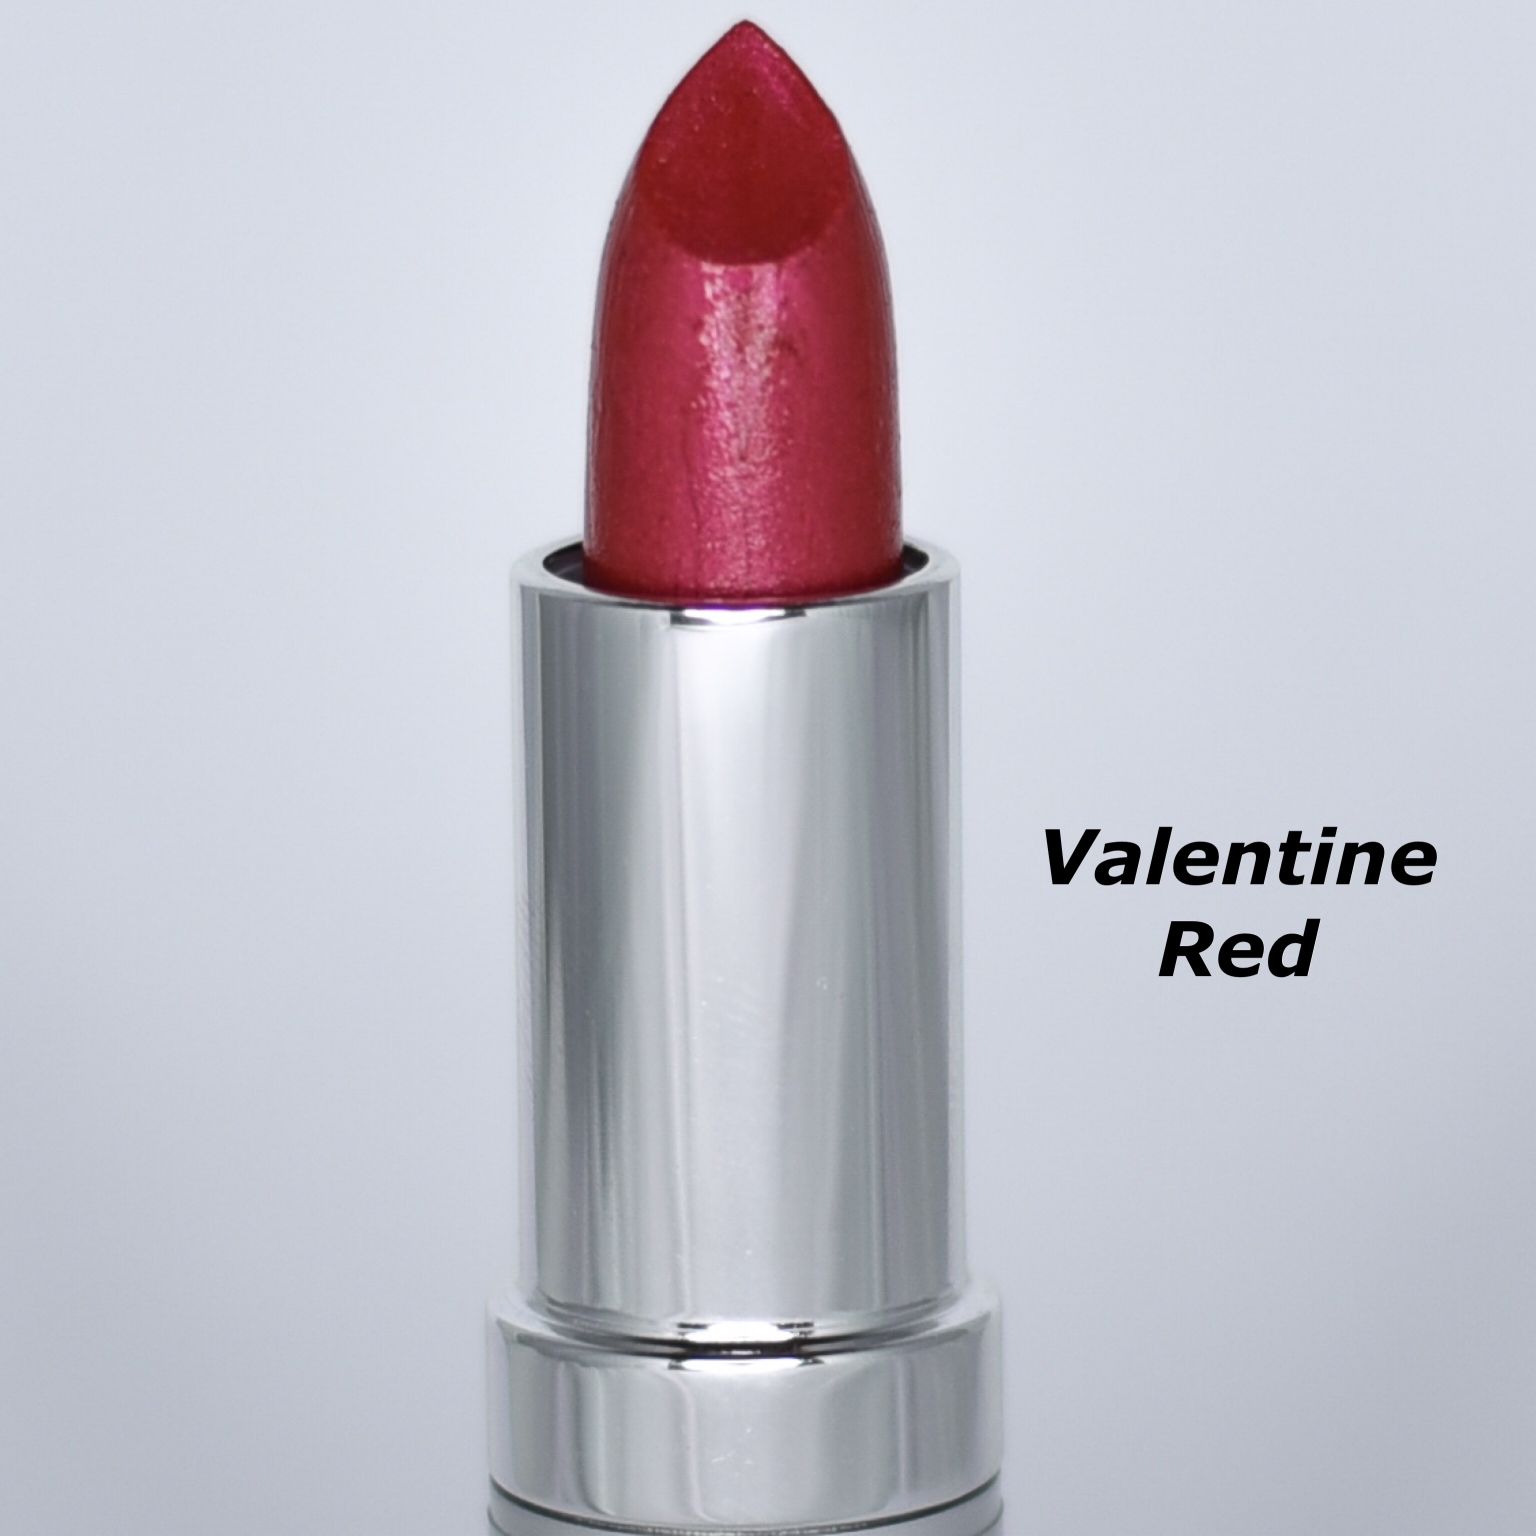 Valentine Red Lipstick